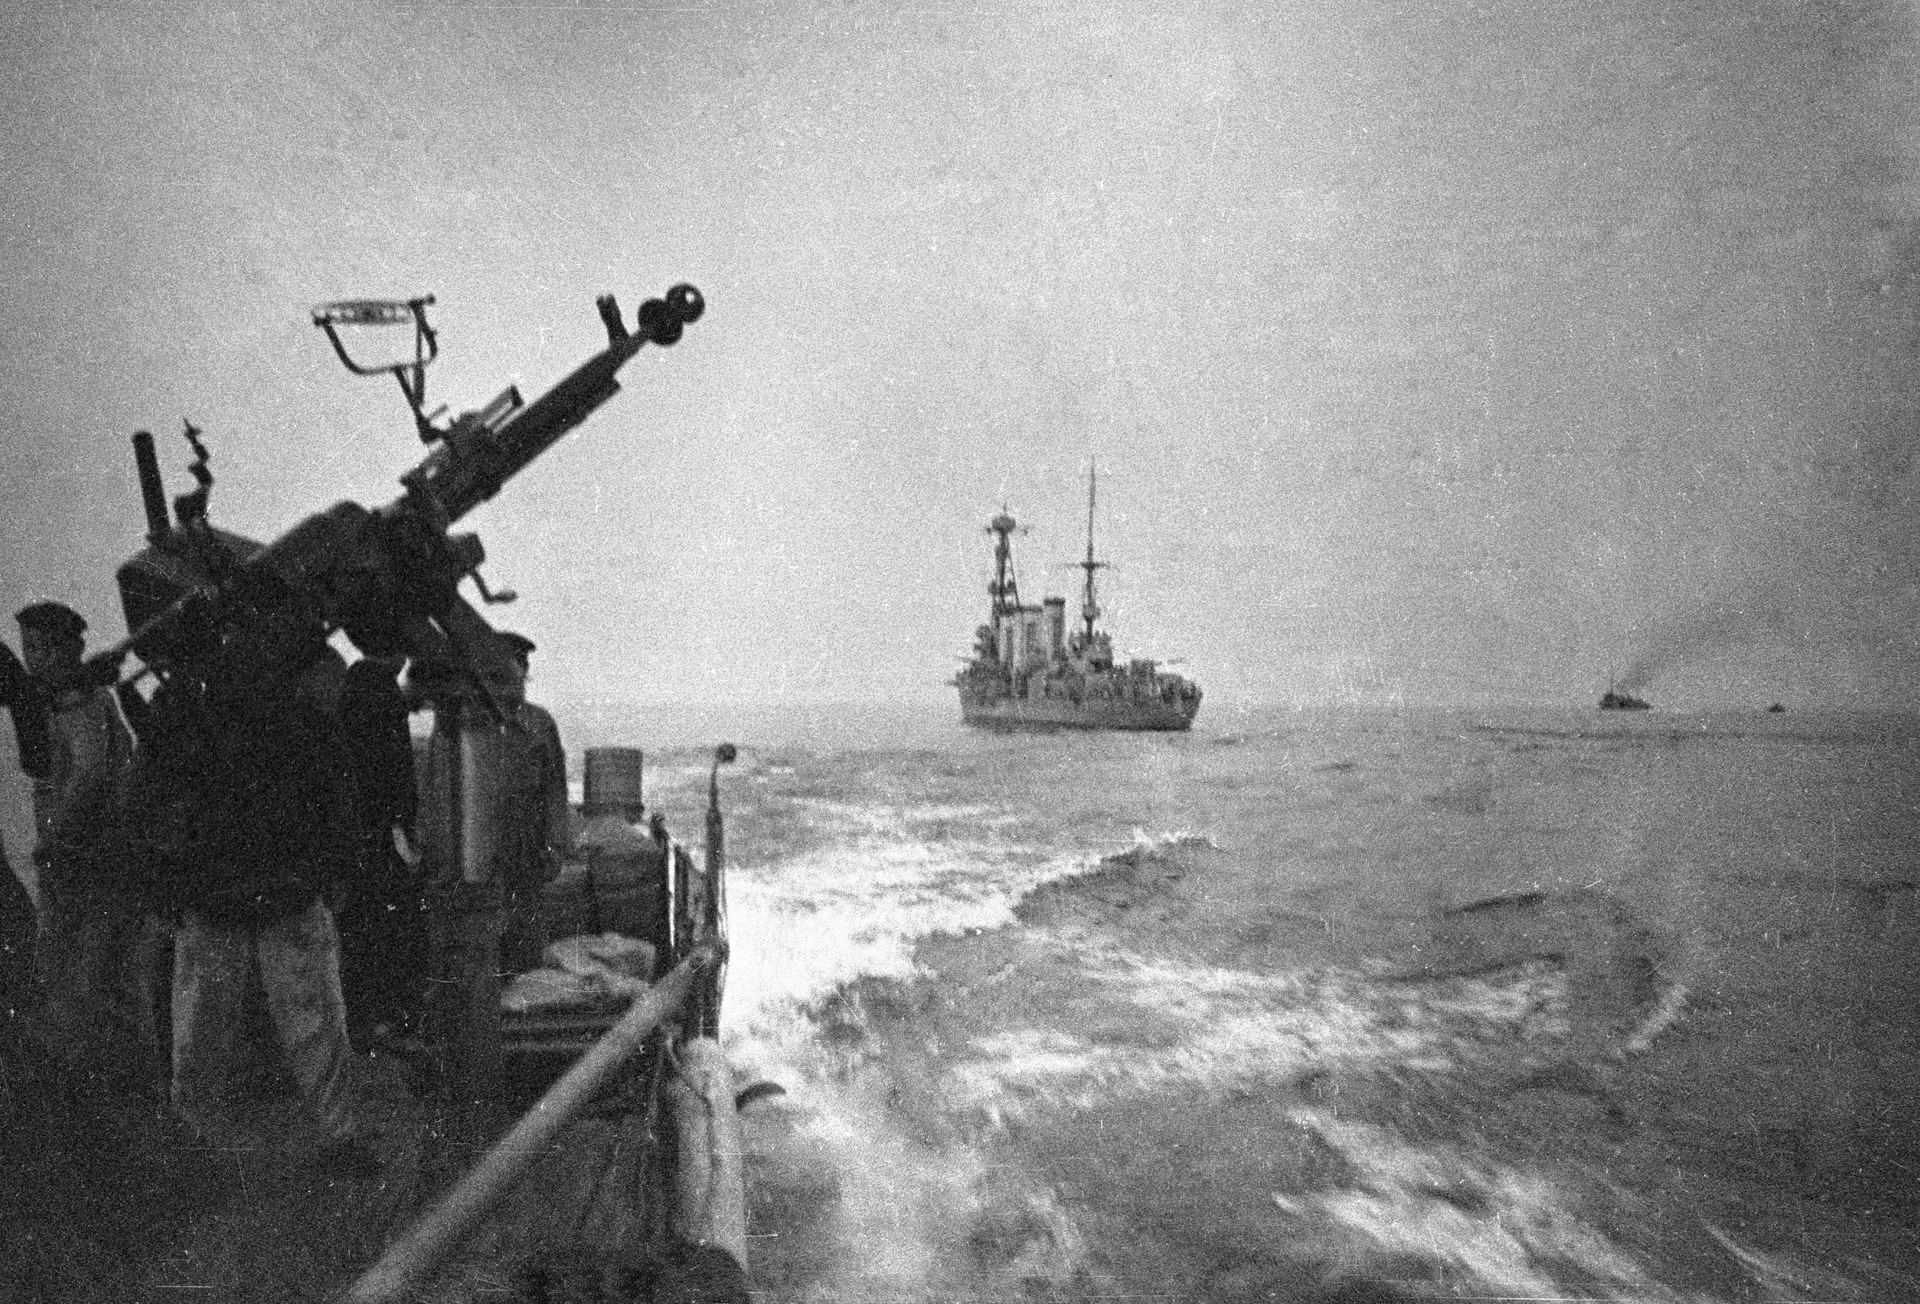 Пулеметчики военного корабля отражают атаку авиации противника - РИА Новости, 1920, 03.08.2021